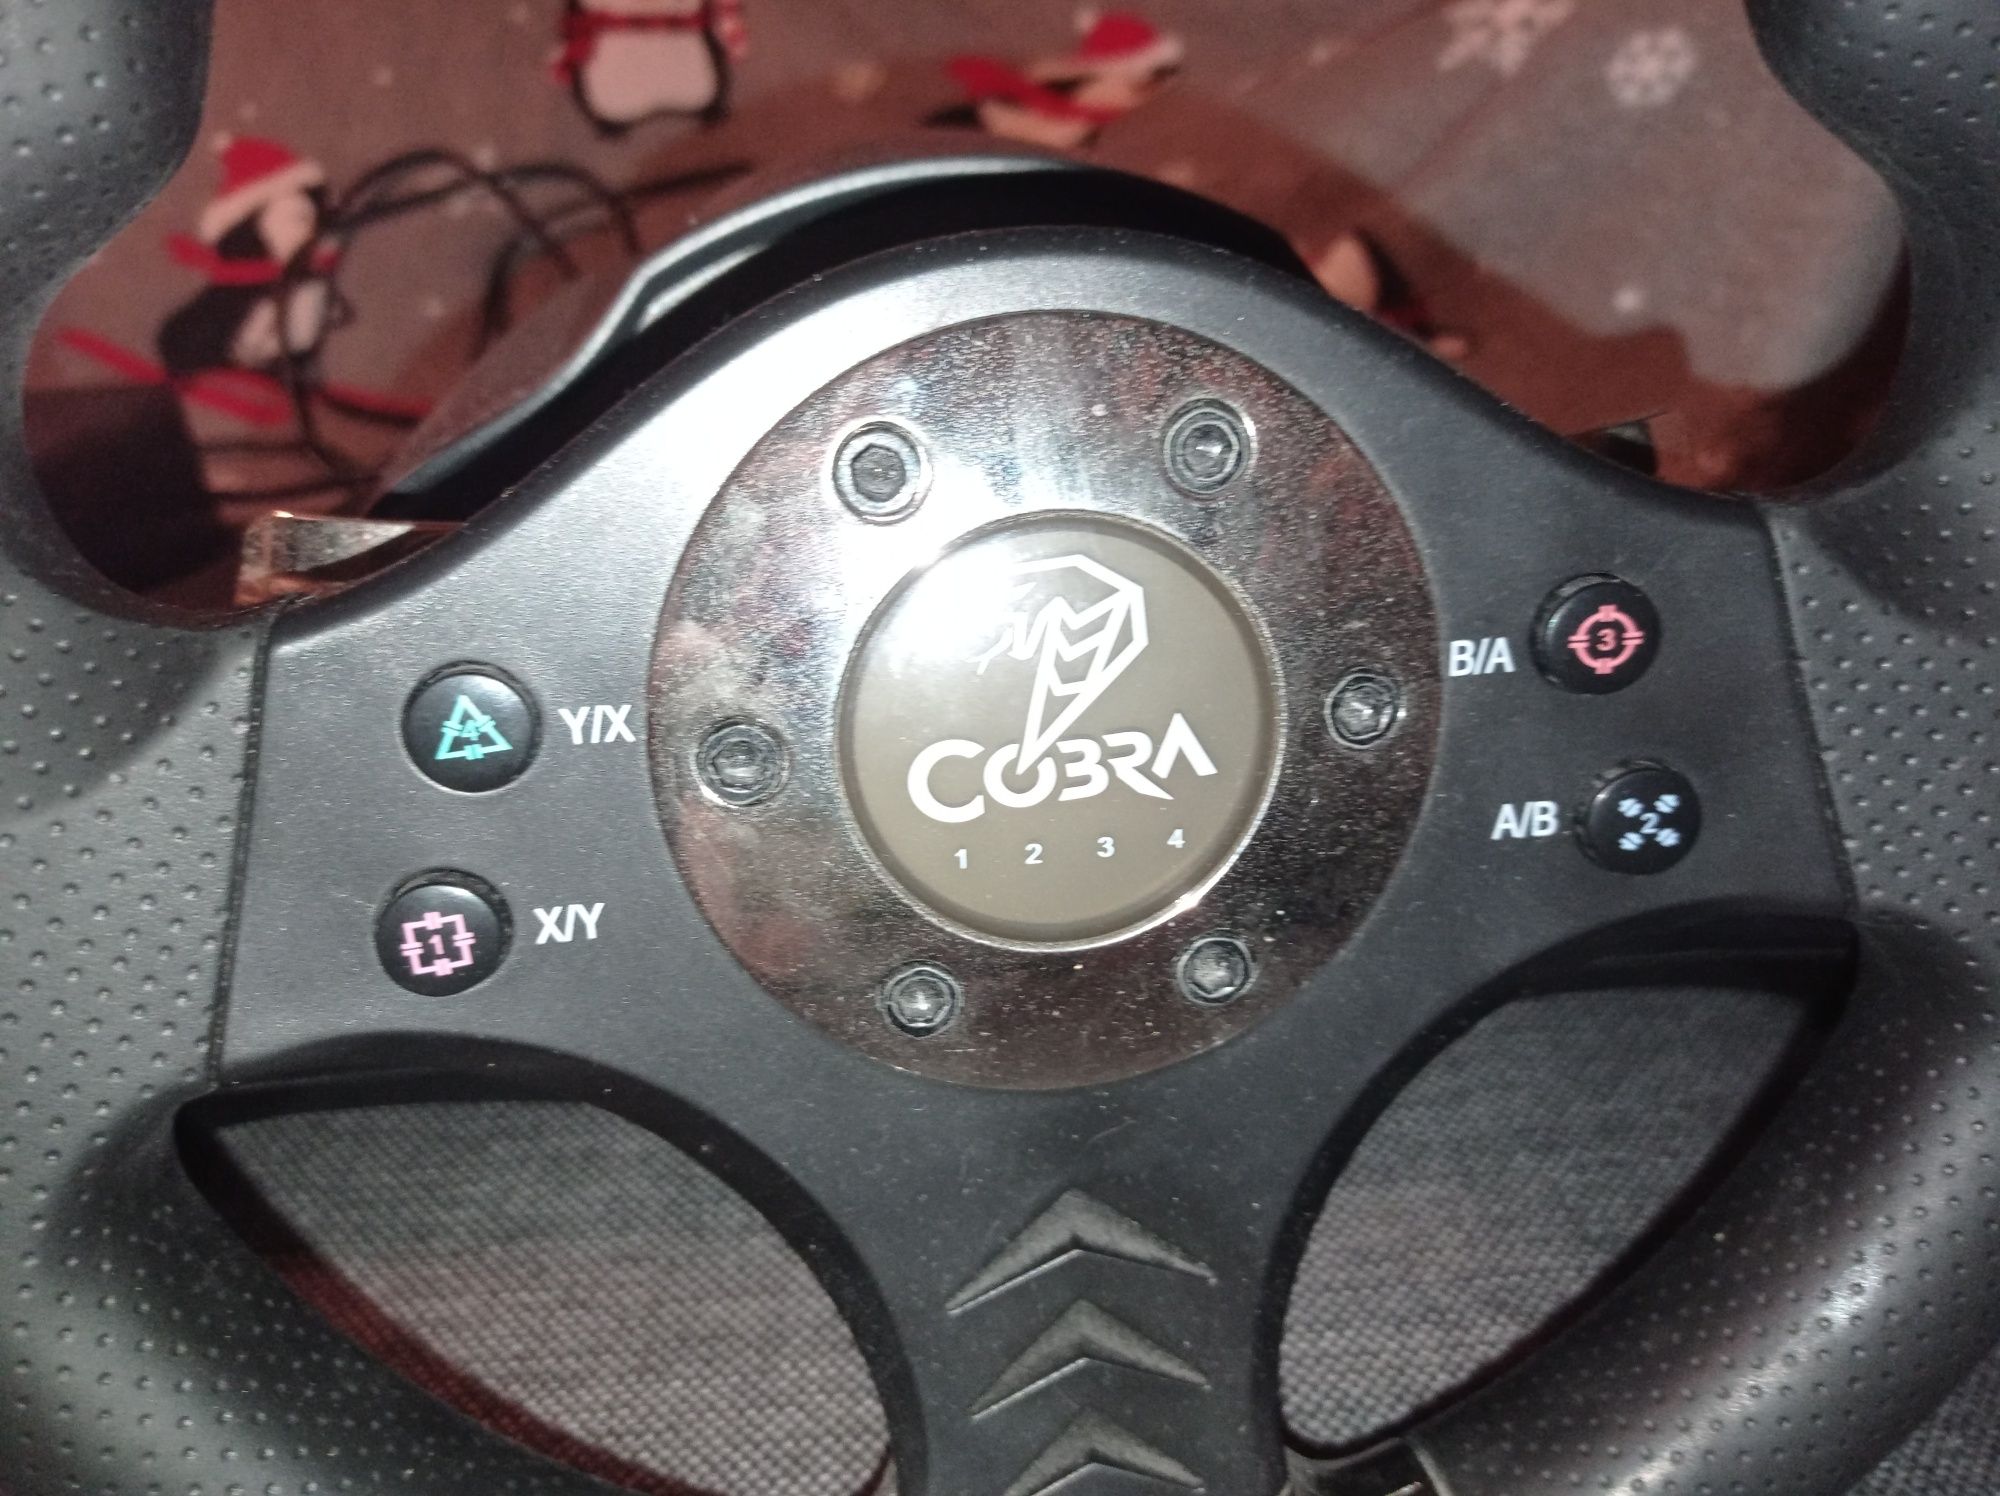 Kierownica Cobra szuka sw60